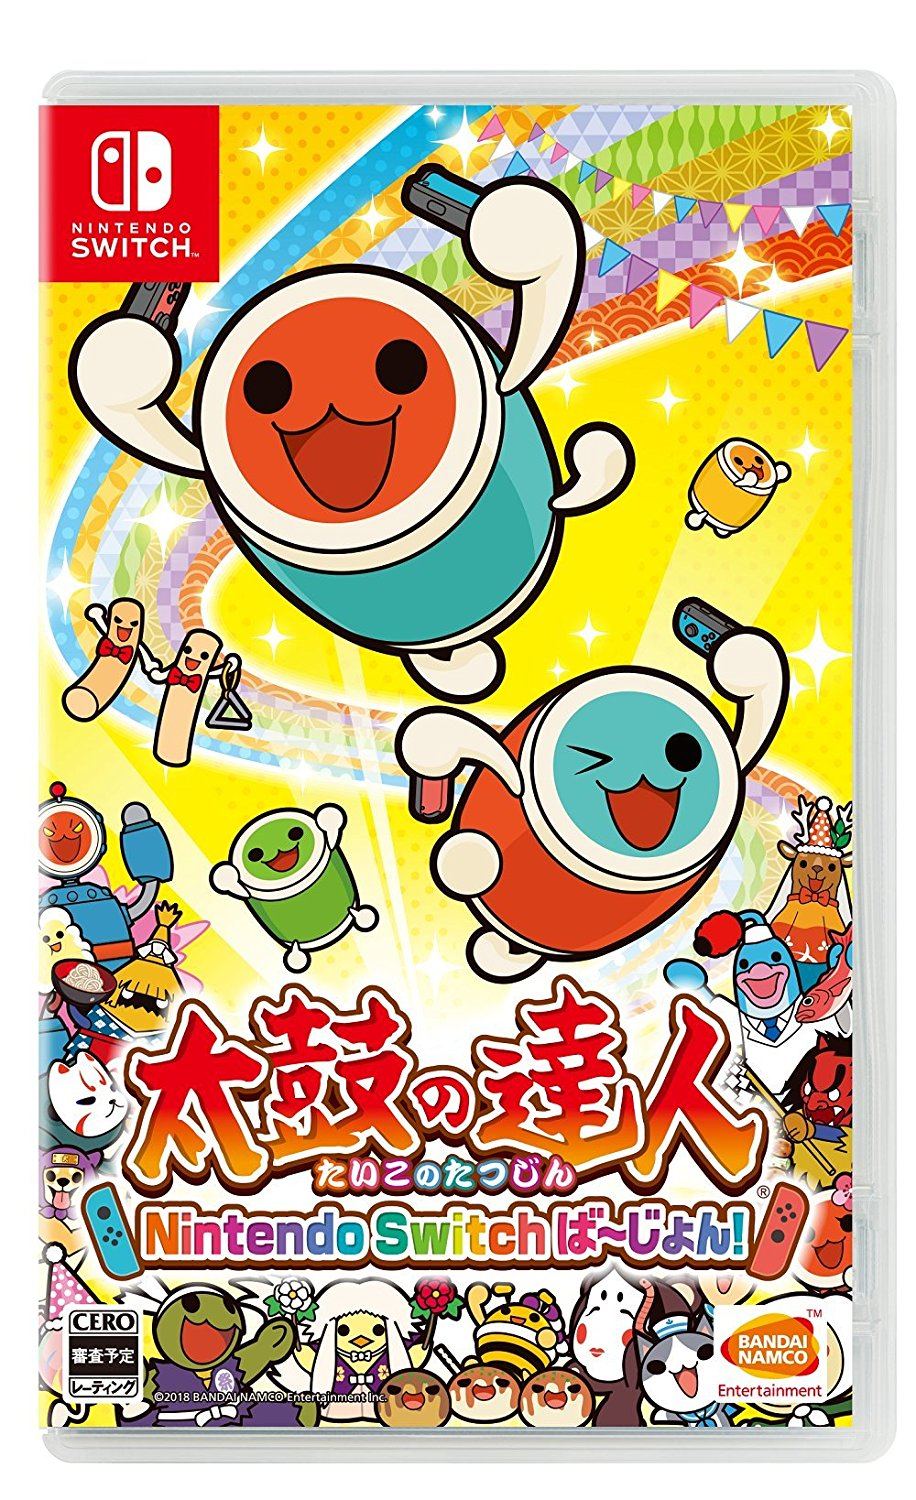 Taiko no Tatsujin: Nintendo Switch Version! (Japan)